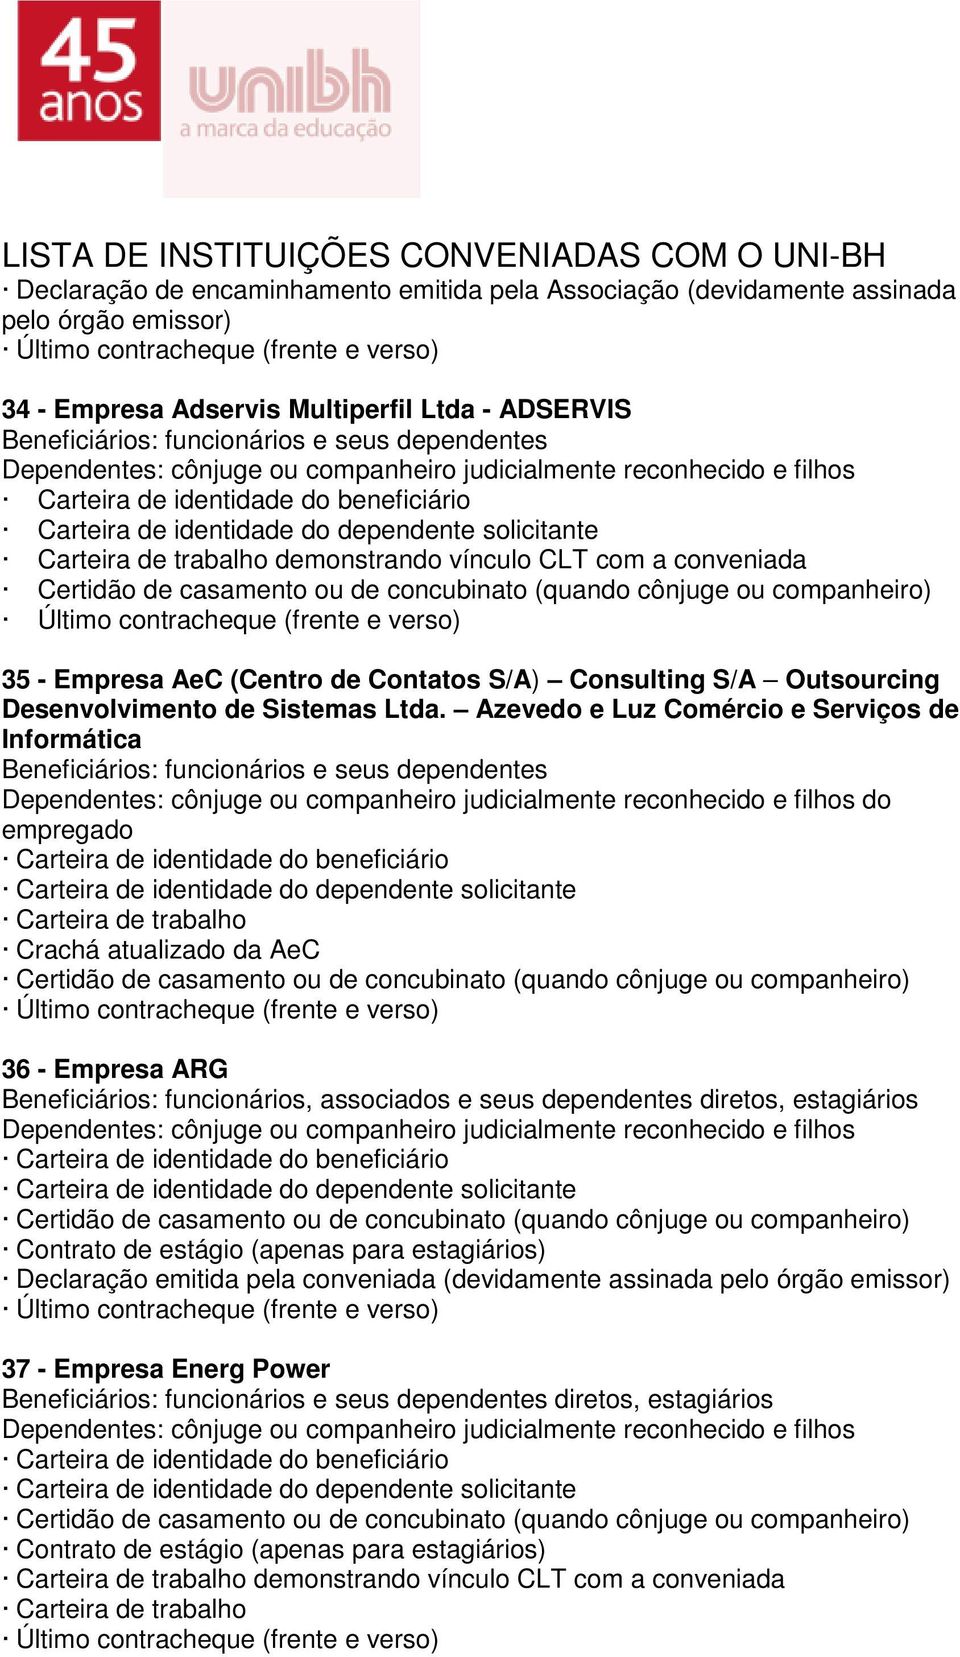 Azevedo e Luz Comércio e Serviços de Informática do empregado Carteira de trabalho Crachá atualizado da AeC 36 - Empresa ARG Beneficiários: